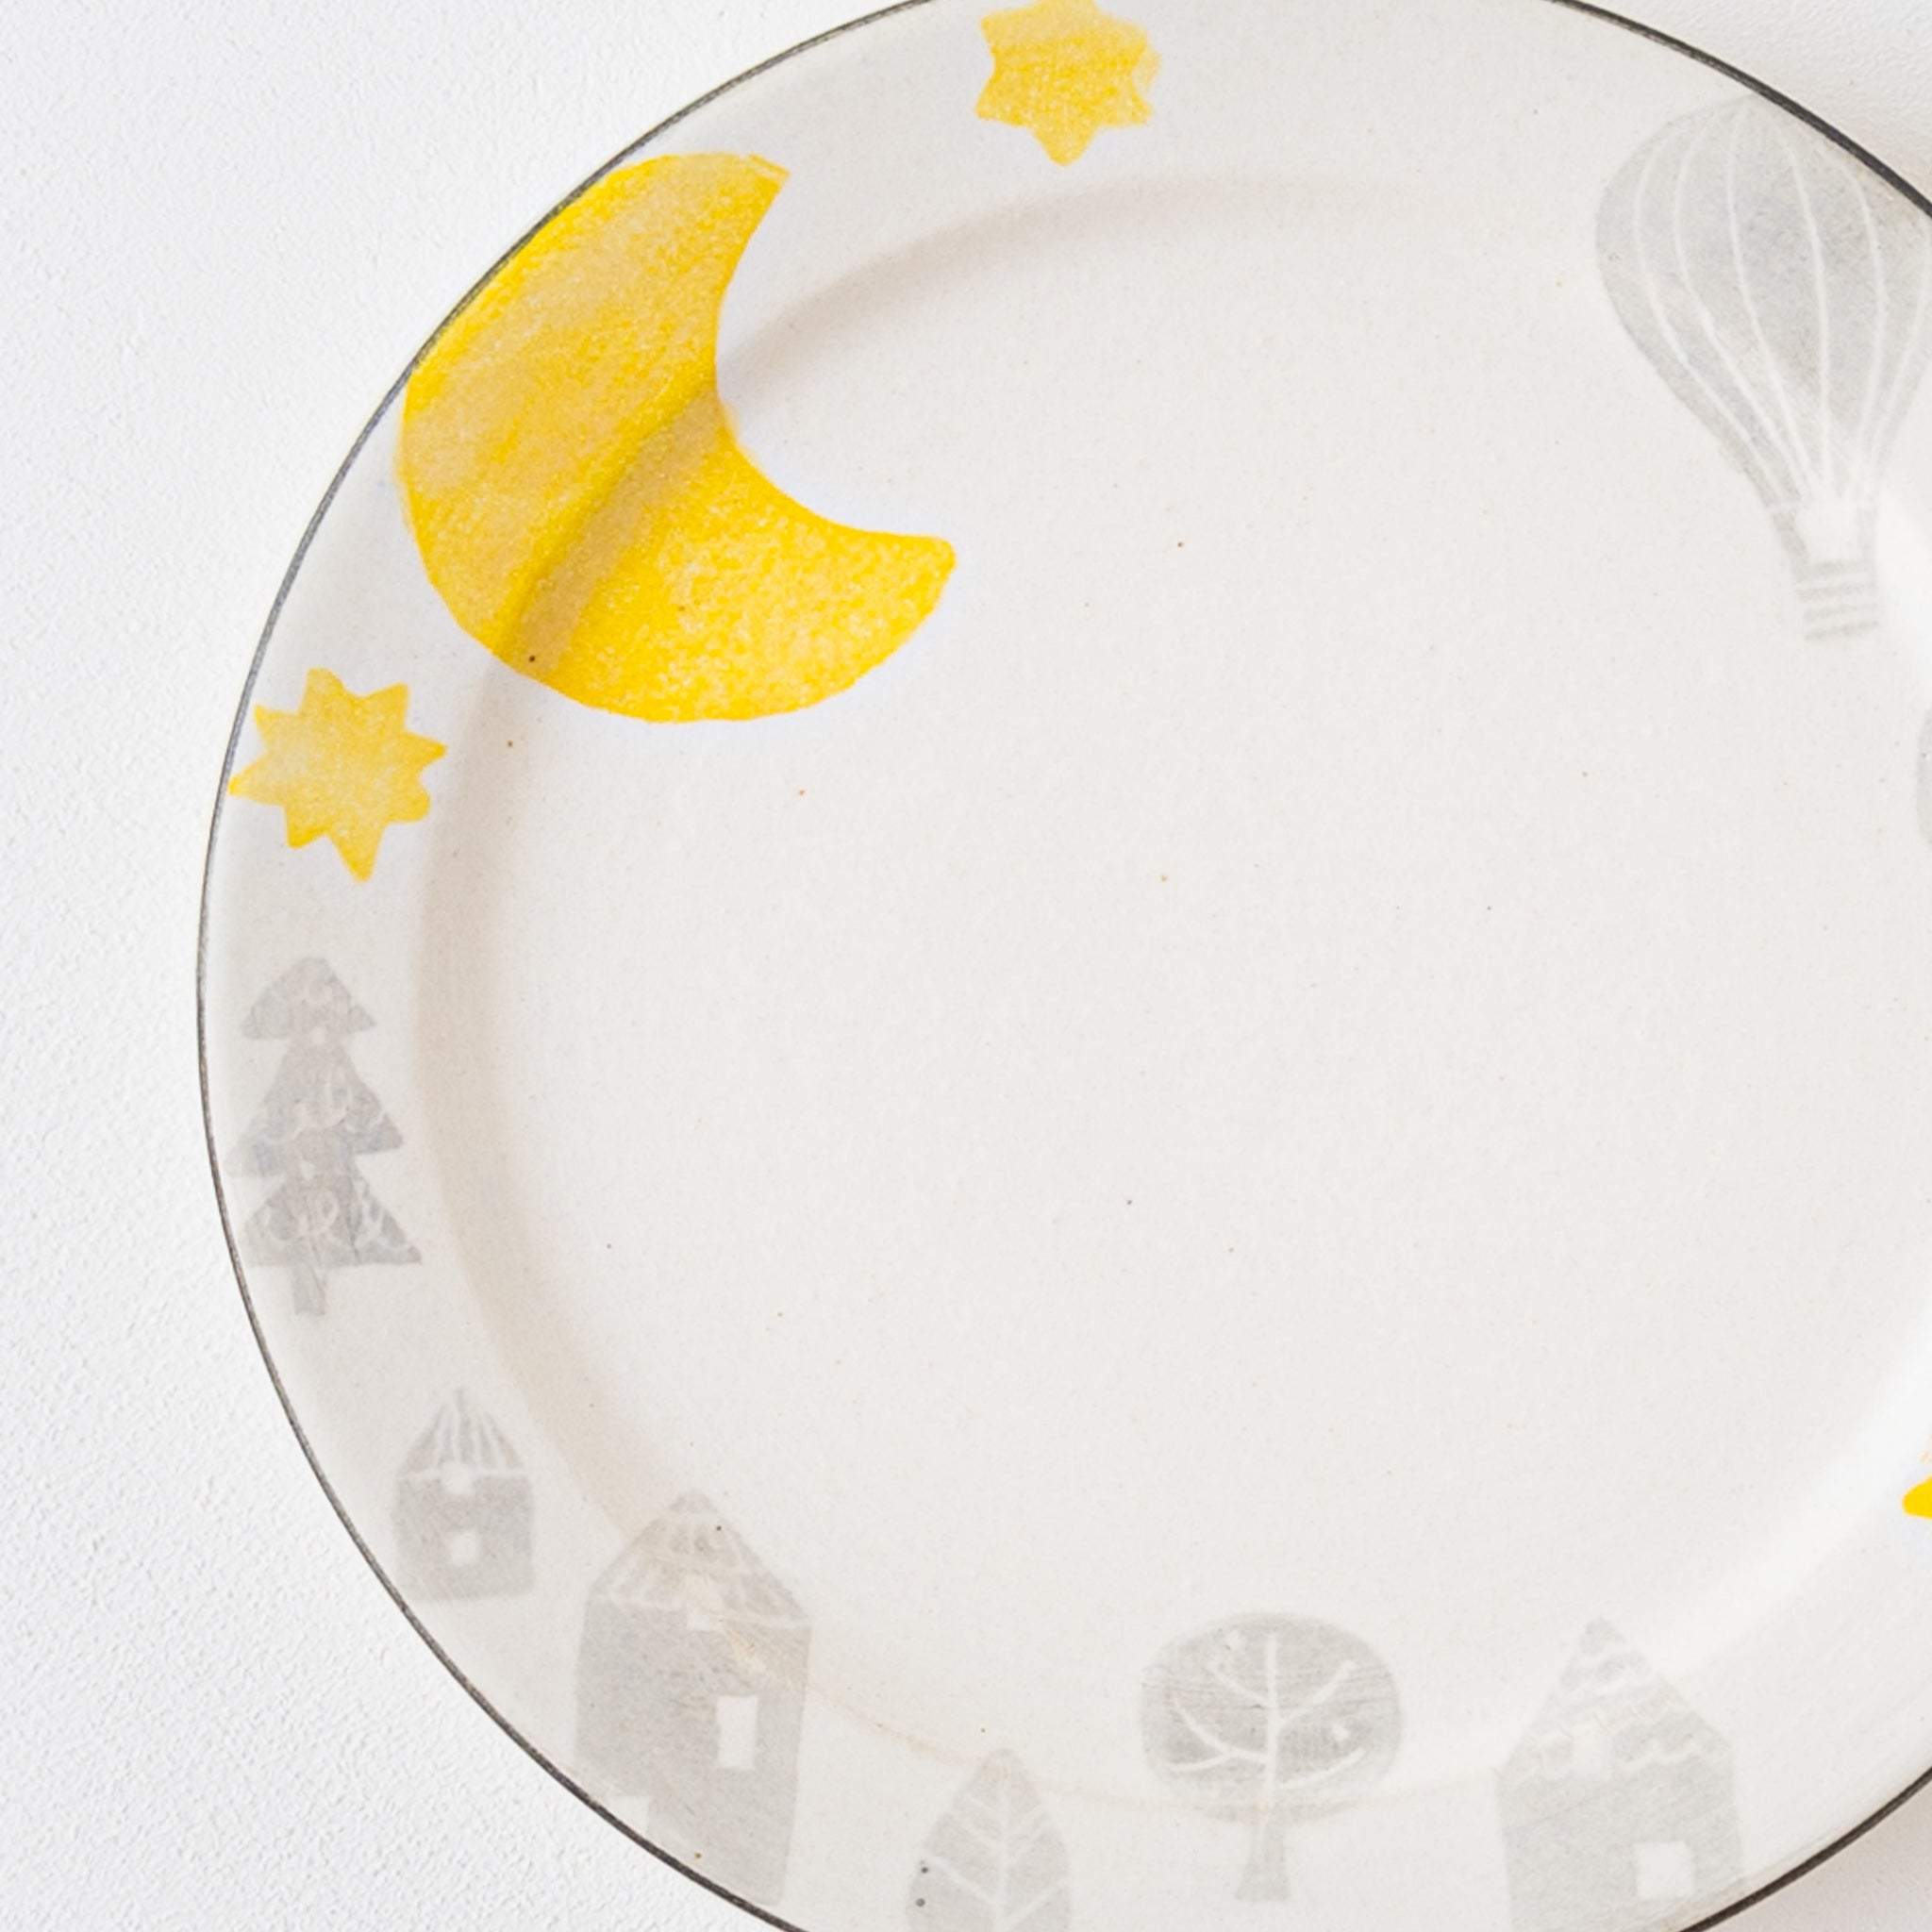 Cute plates like fairy tales from Yasumi Koubou